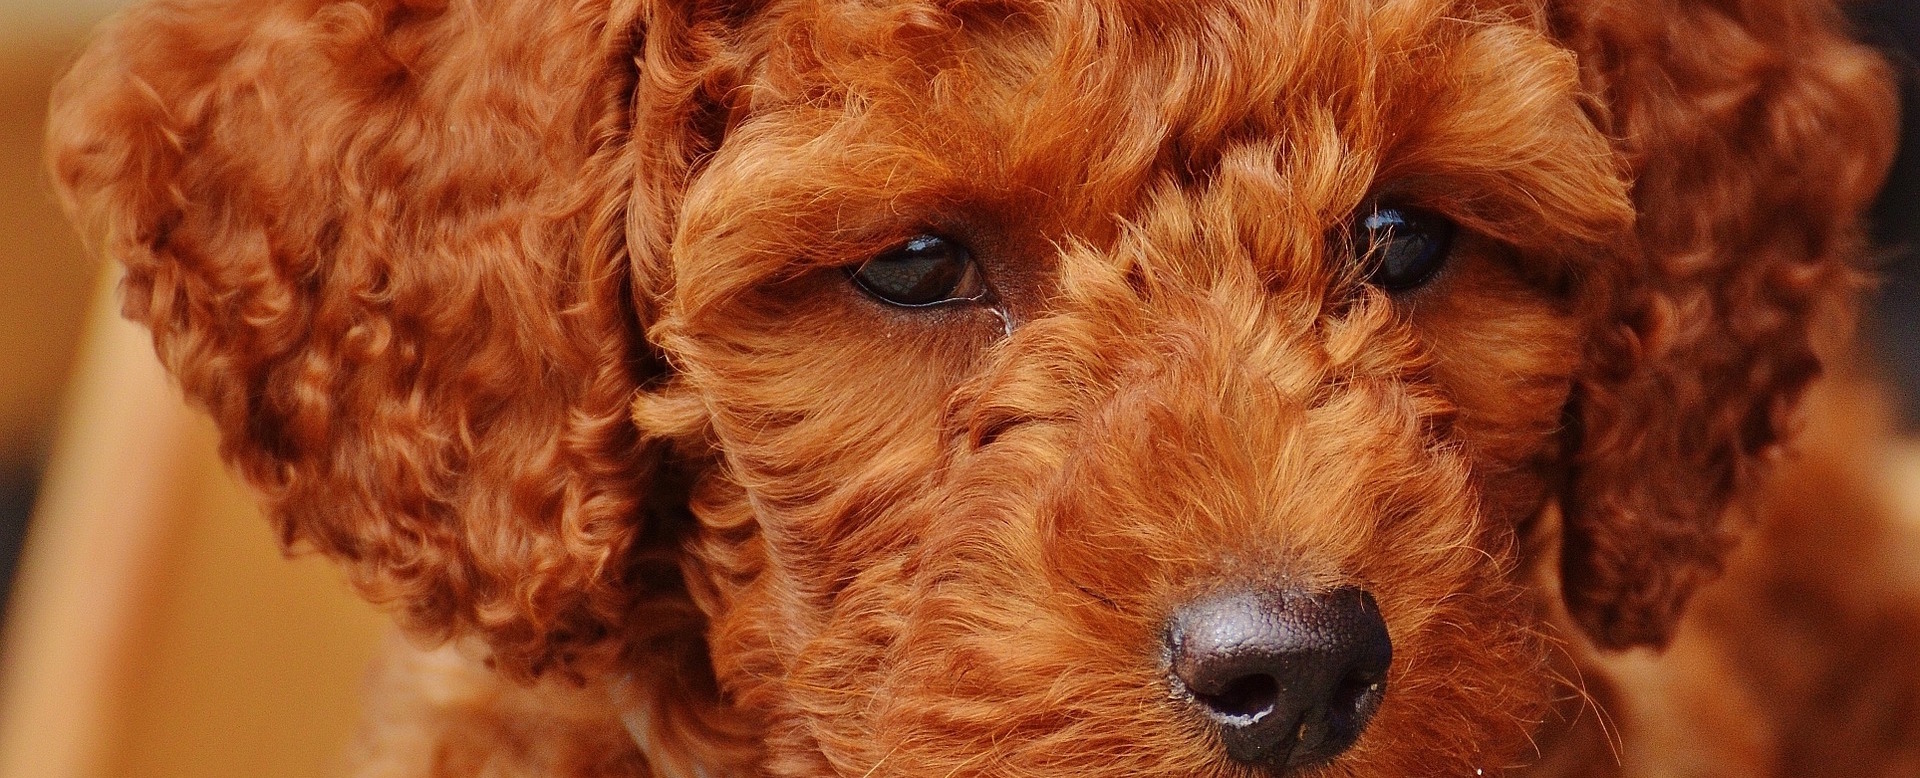 Пудель: виды и фото собаки, описание, характер породы - разнообразие и особенности породы пудель